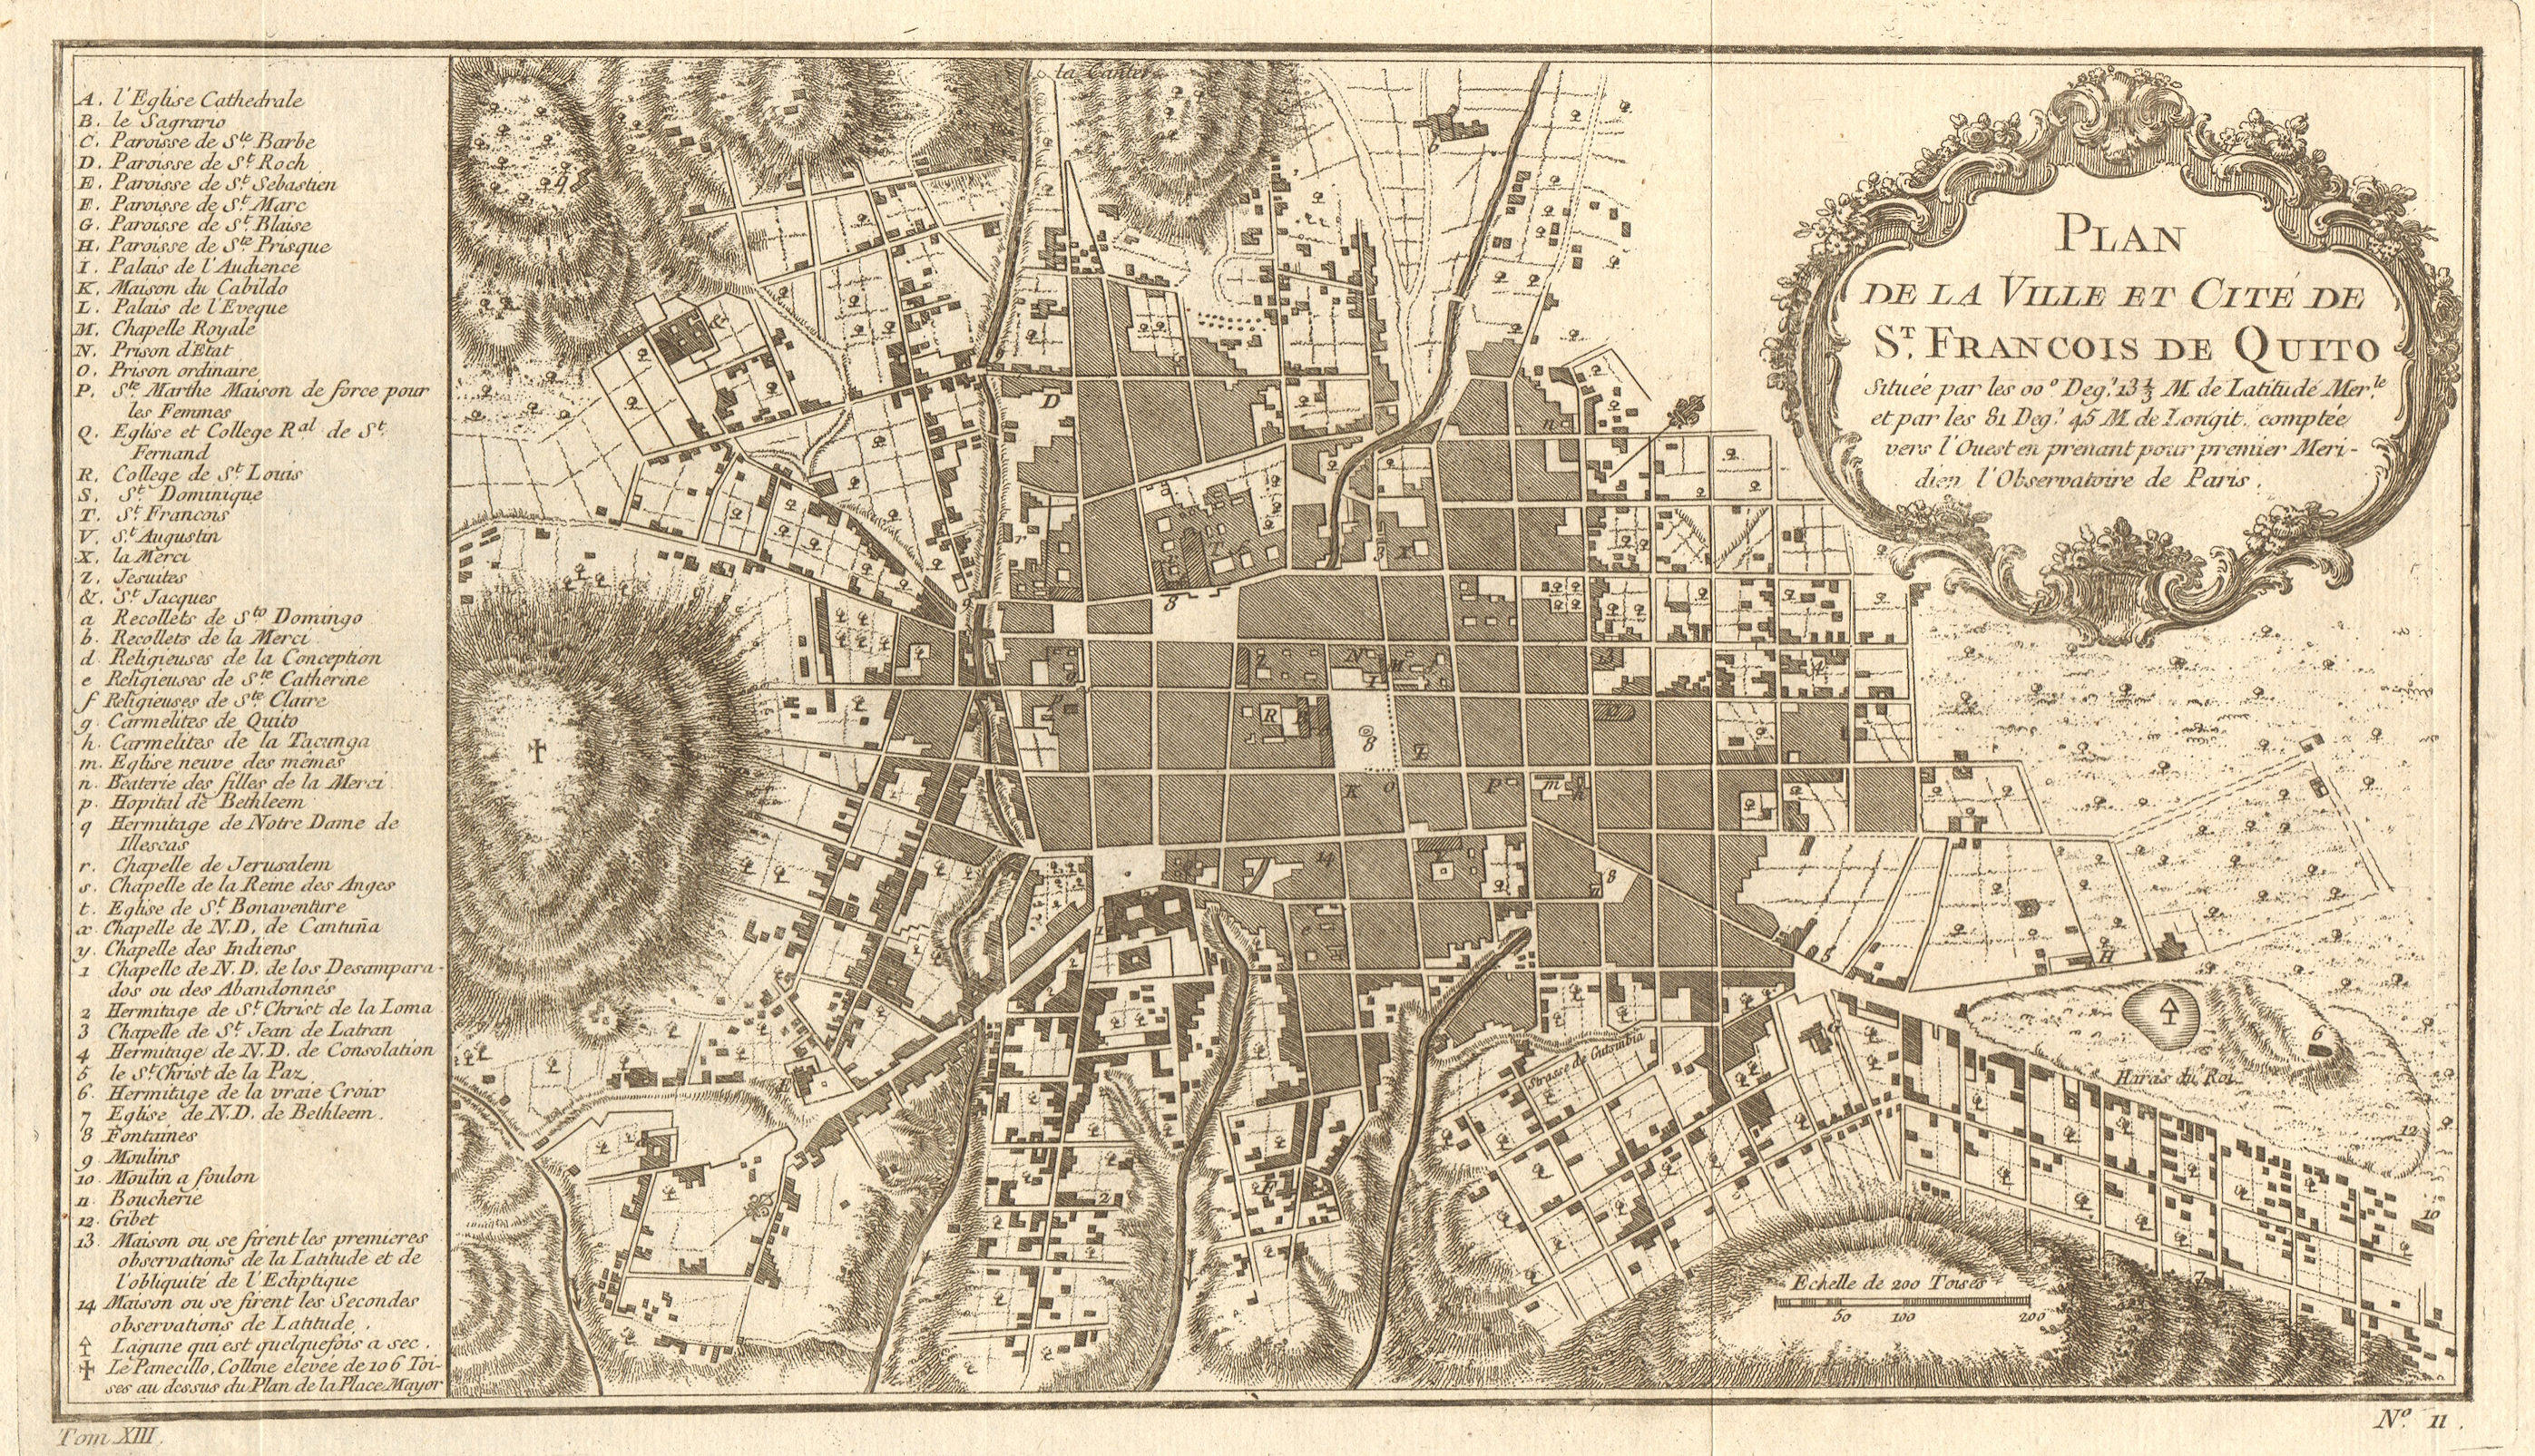 'Plan de la ville et Cité de St. Francois de Quito'. Ecuador. BELLIN 1756 map